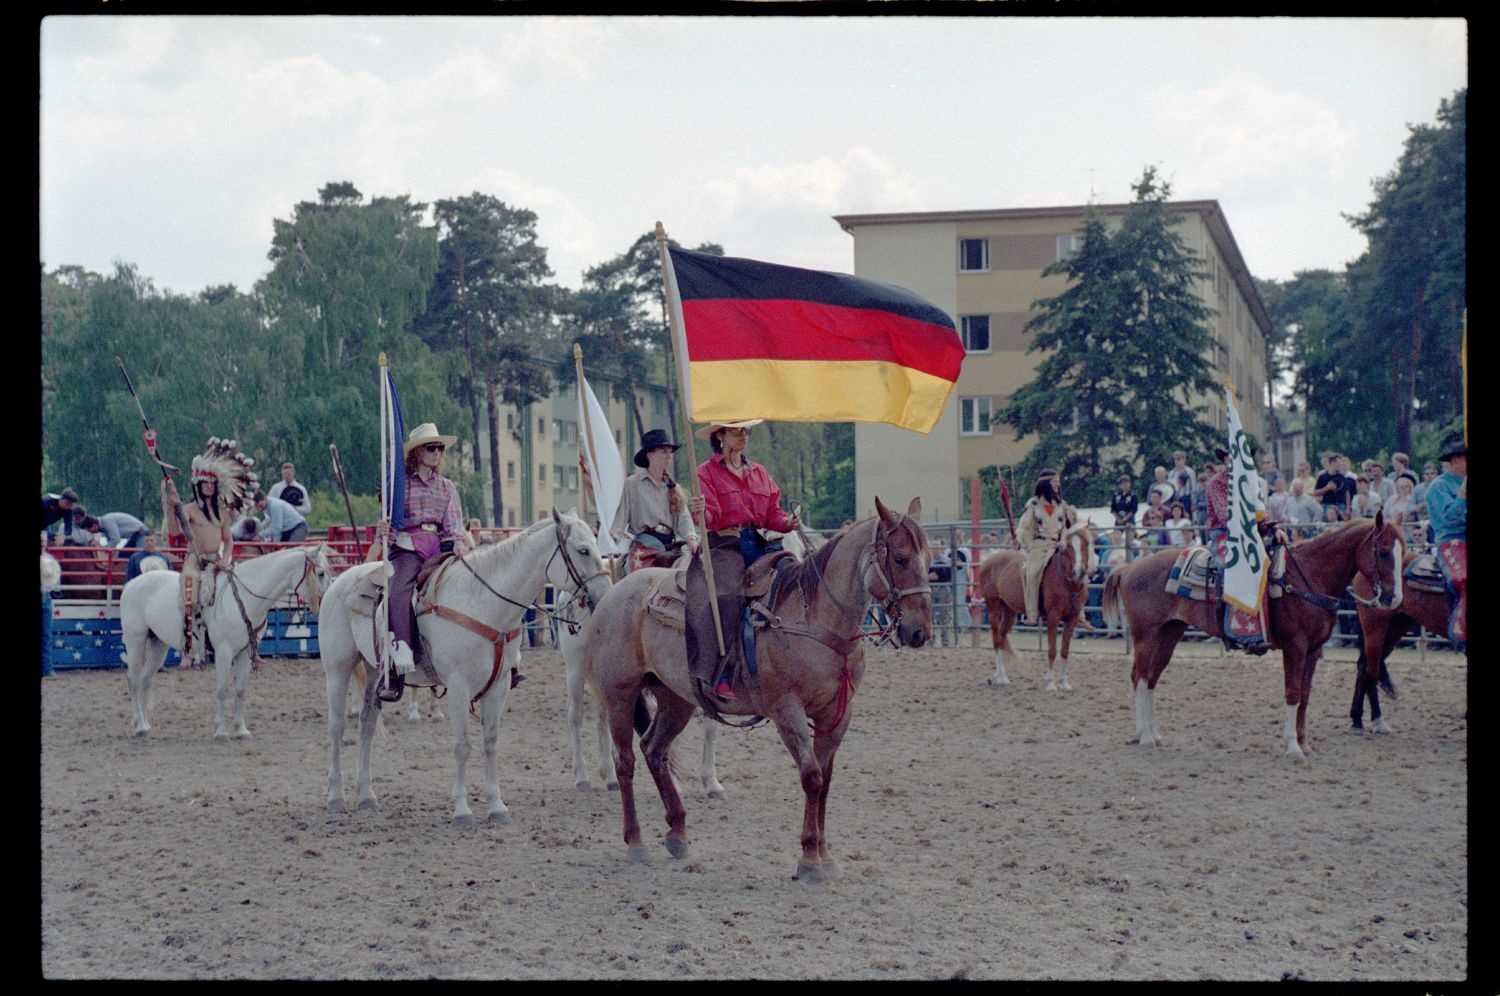 Fotografie: Rodeo/West Fest 92 auf dem Festplatz Deutsch-Amerikanisches Volksfest in Berlin-Dahlem (AlliiertenMuseum/U.S. Army Photograph Public Domain Mark)